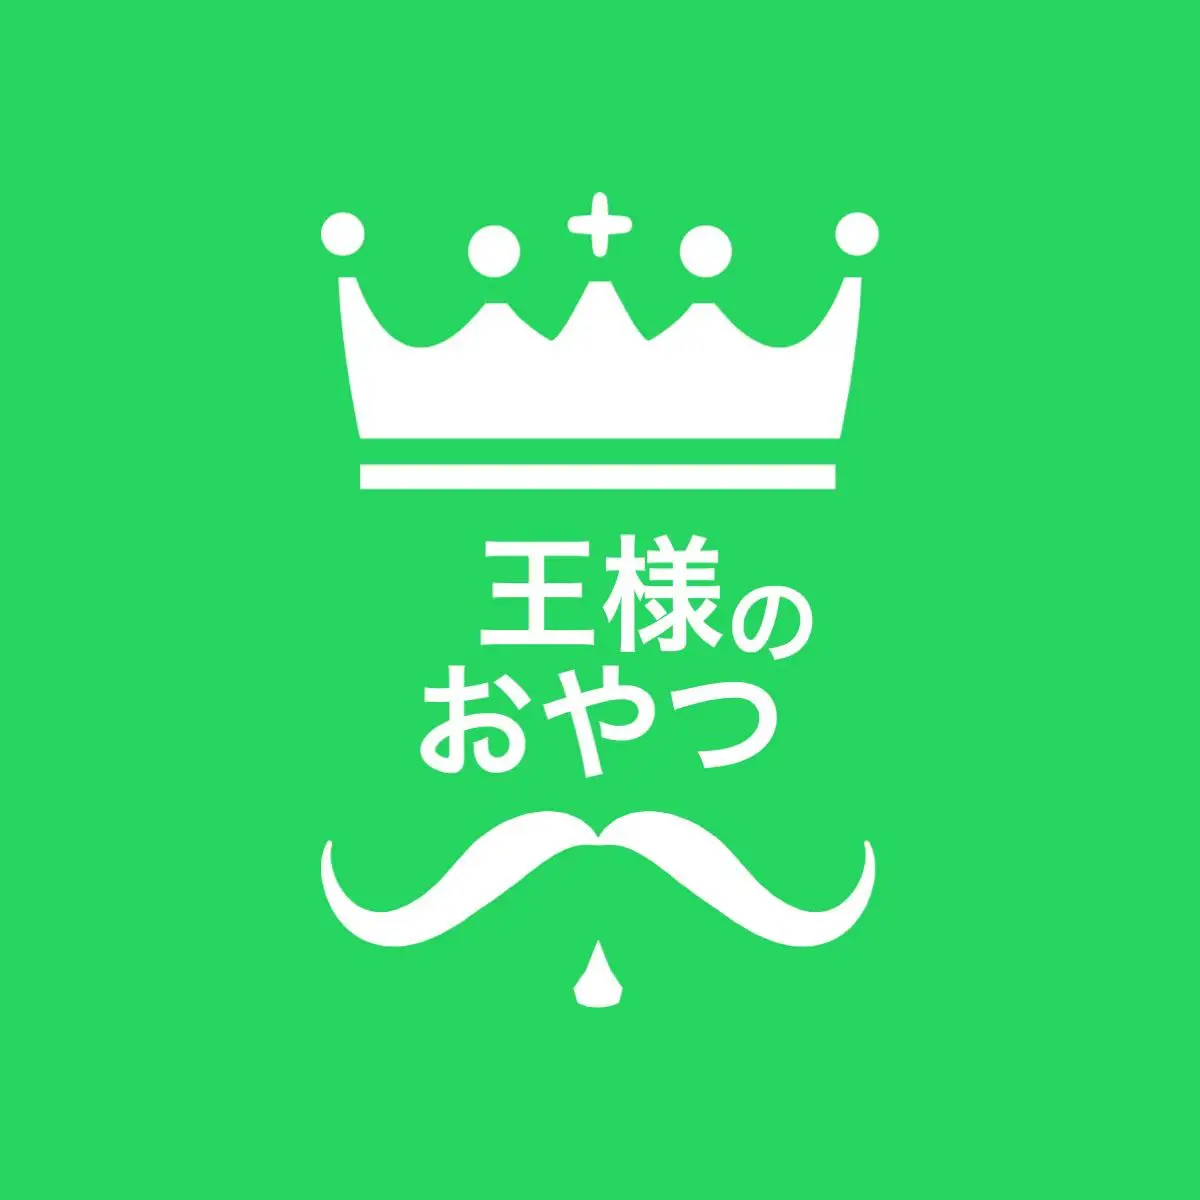 King’s snack logo